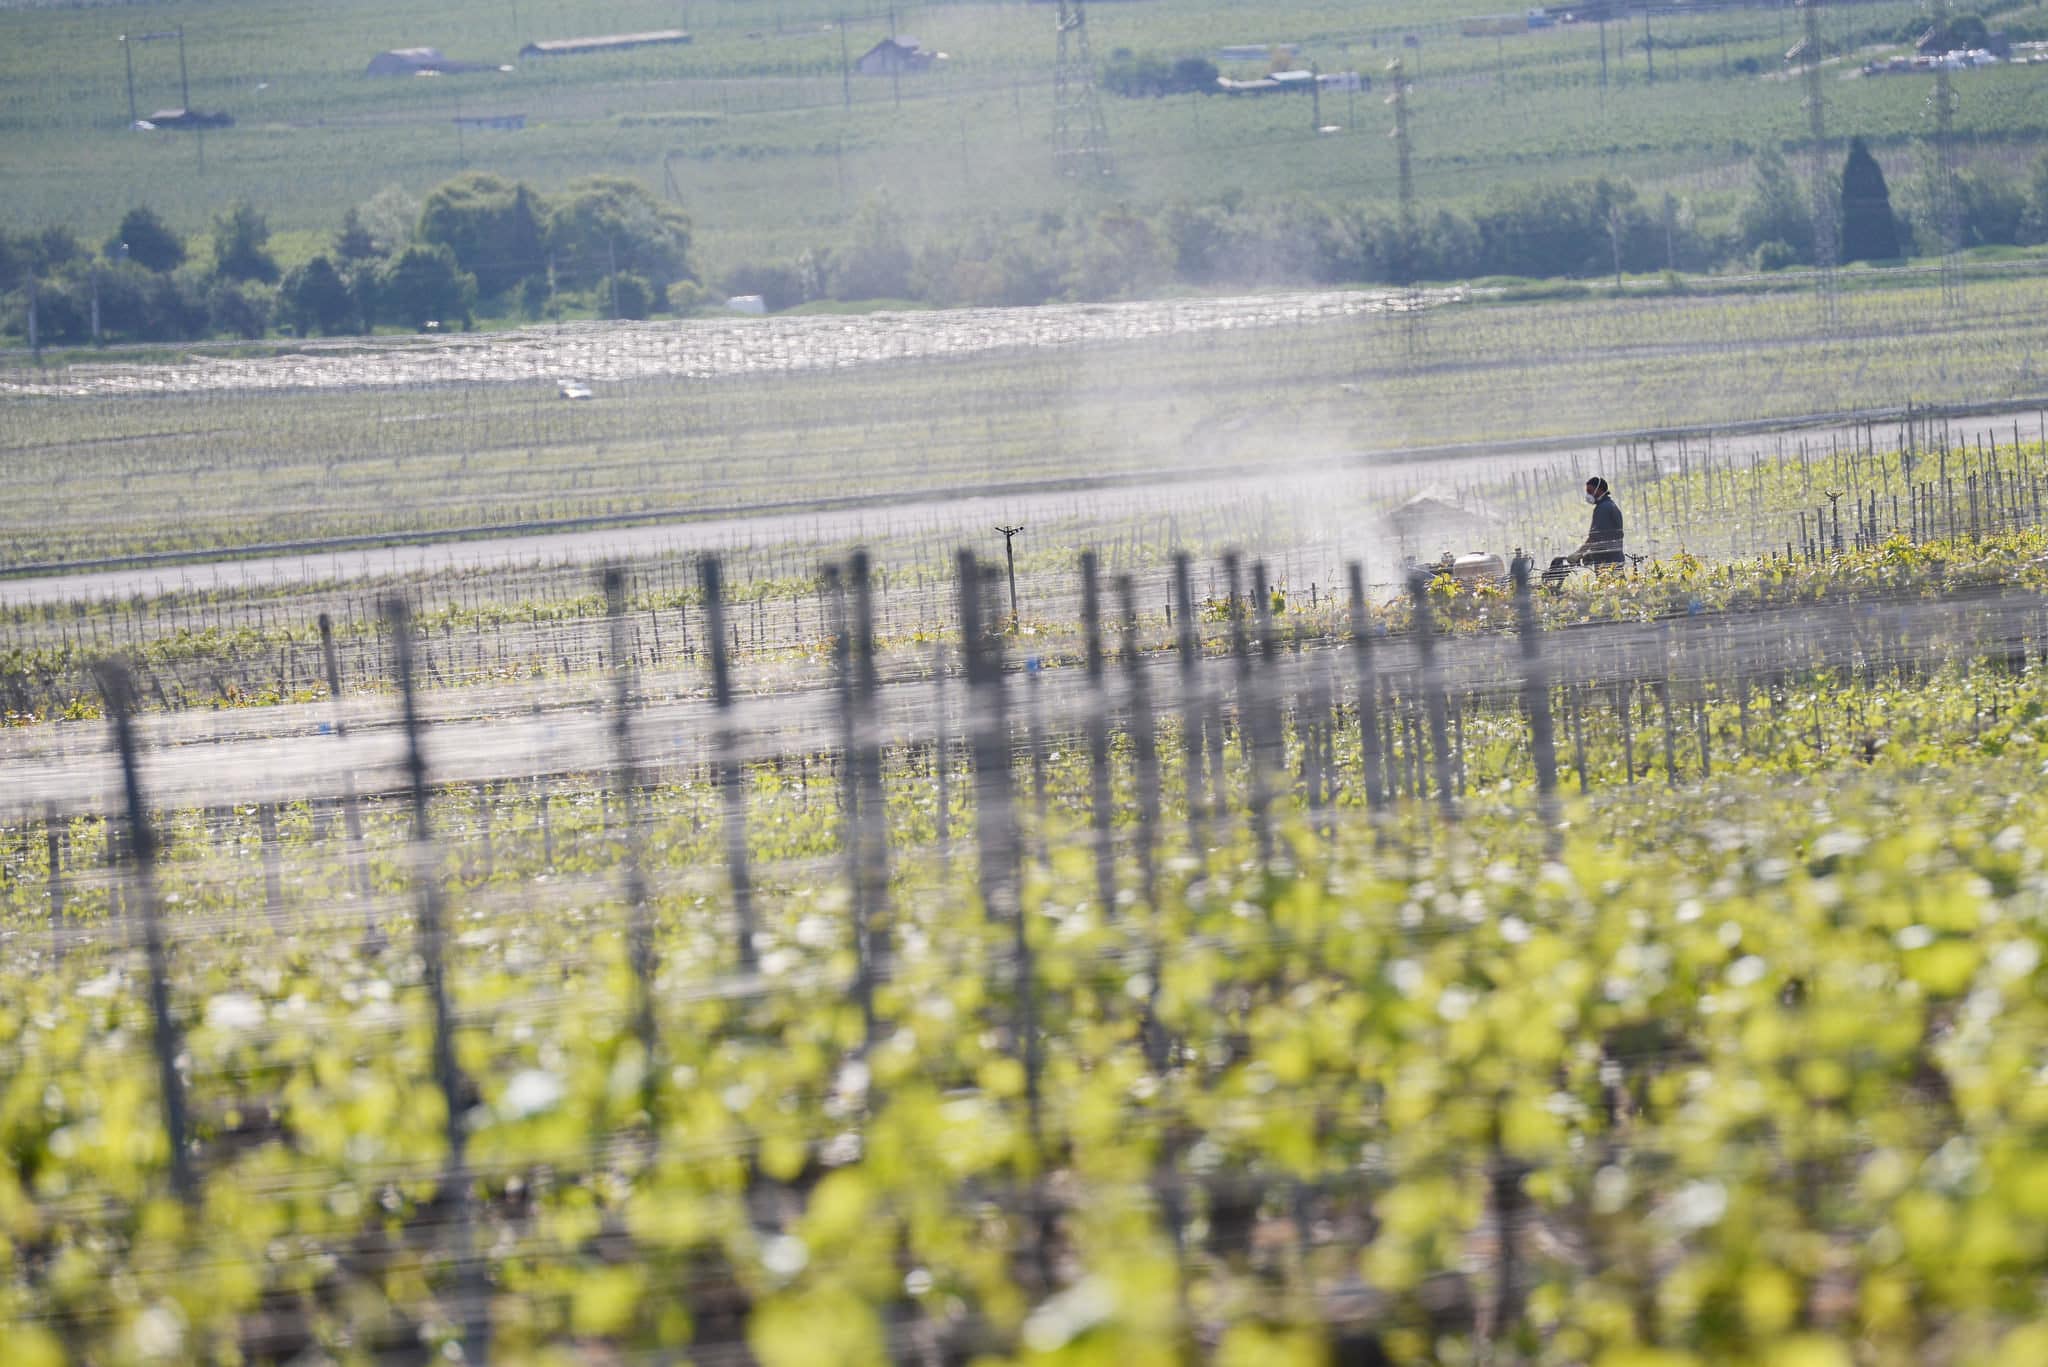 Le vignoble bordelais a entamé sa détox des pesticides : info ou intox ?